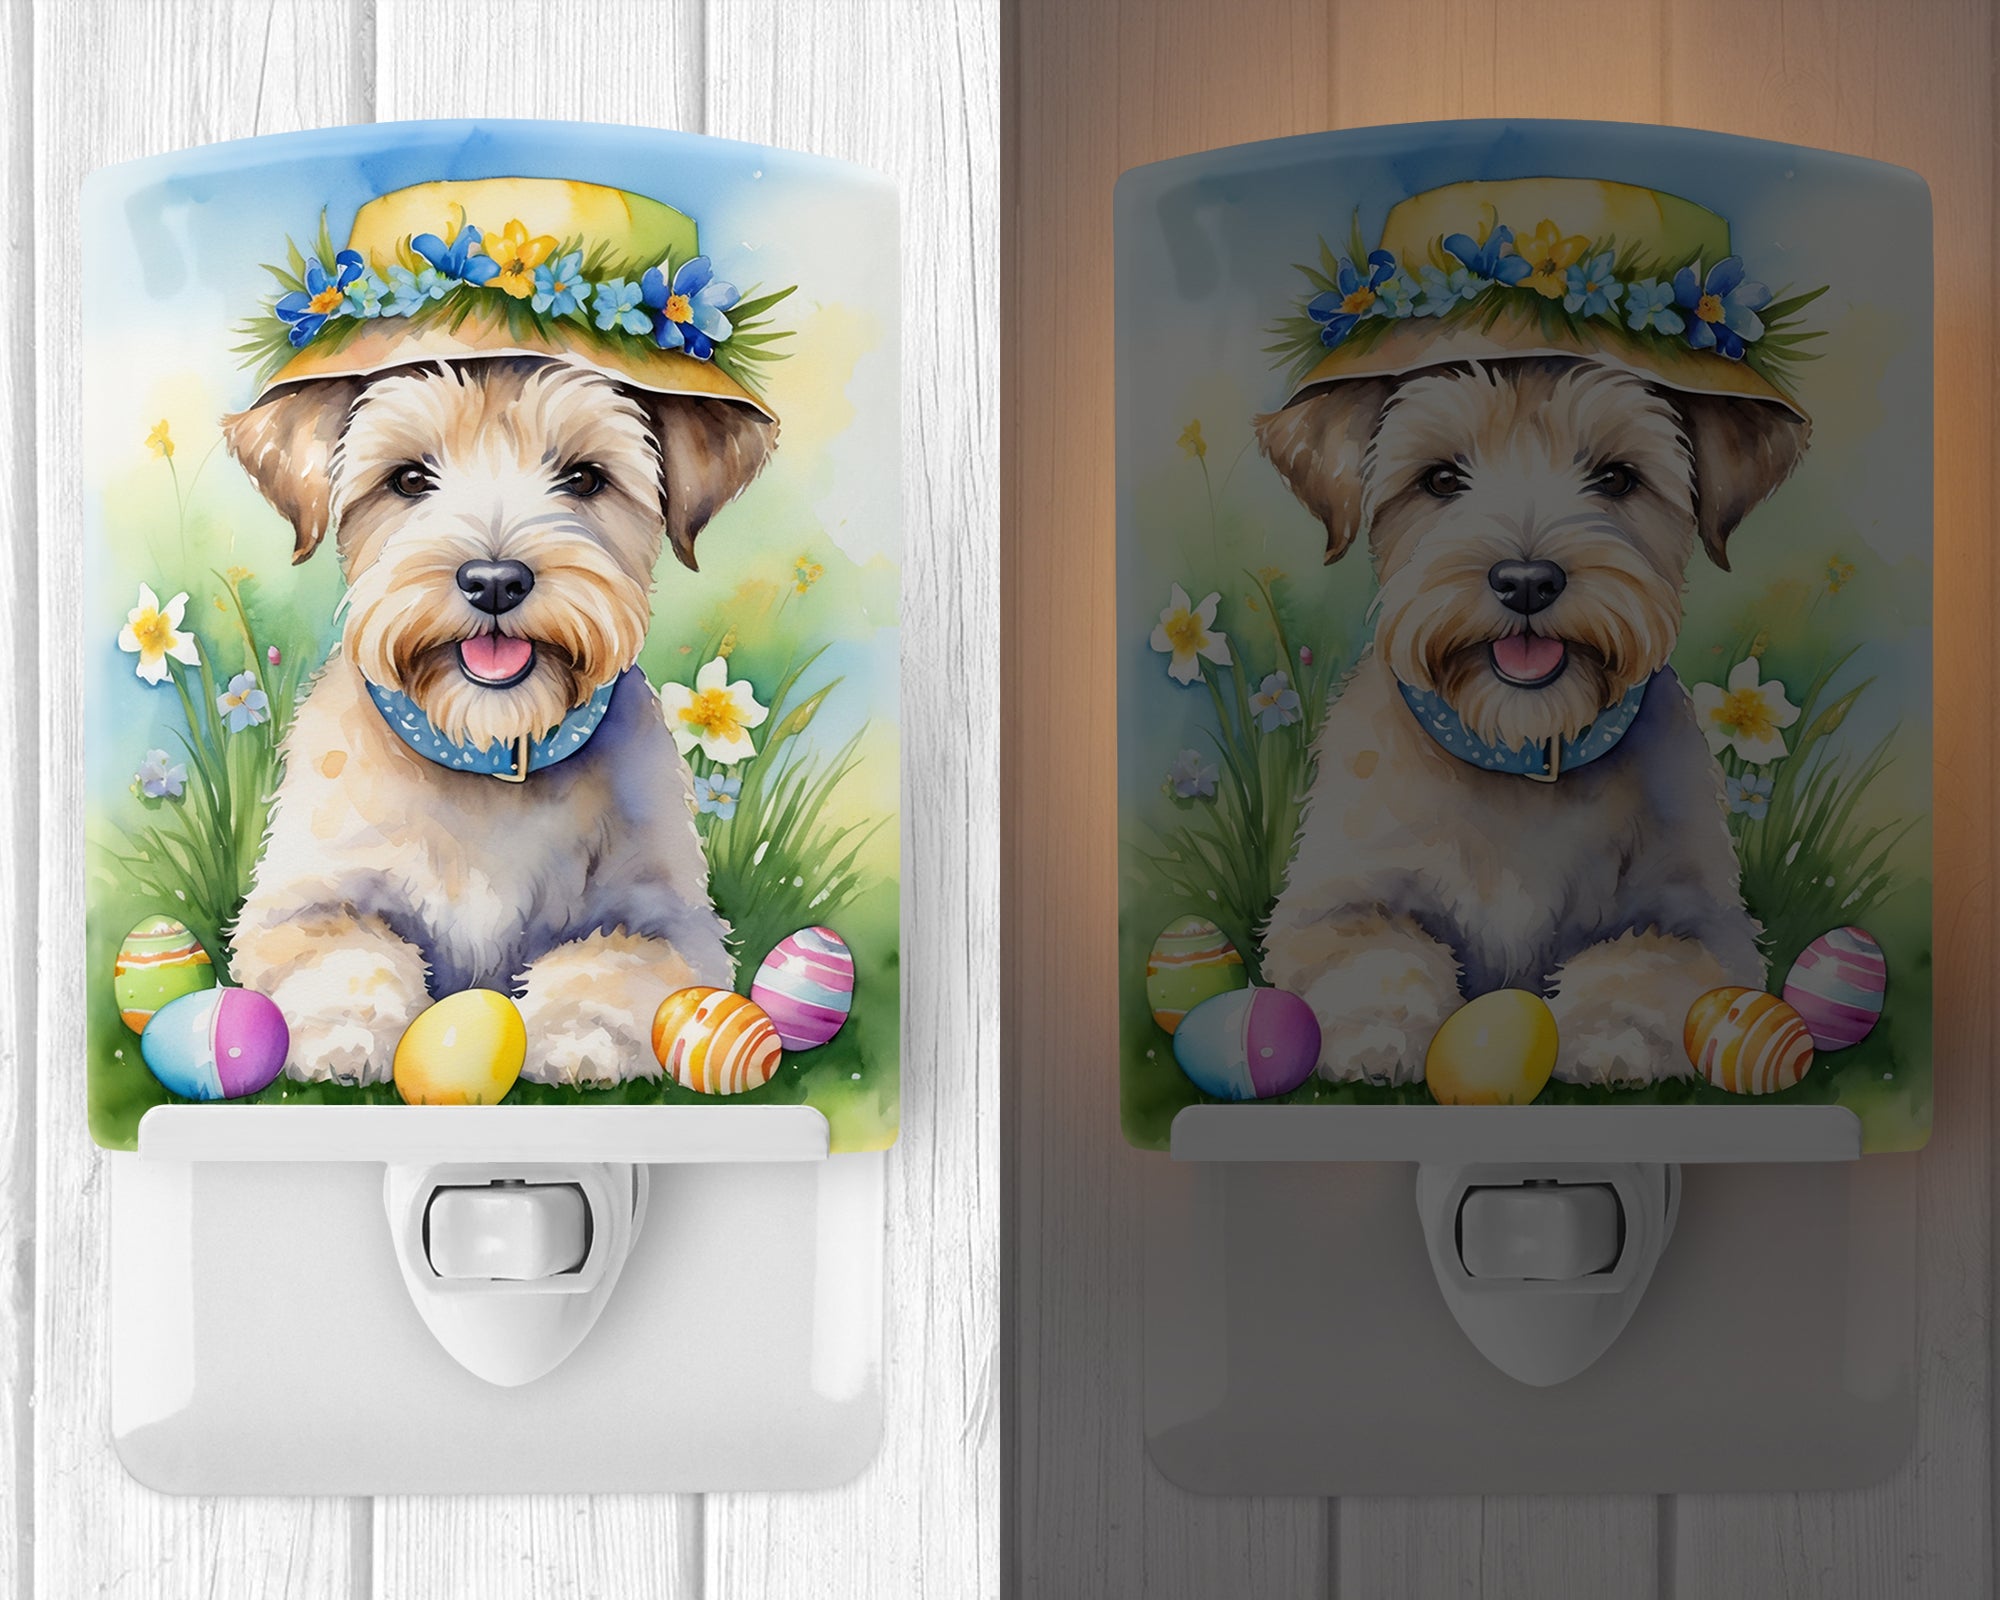 Buy this Wheaten Terrier Easter Egg Hunt Ceramic Night Light